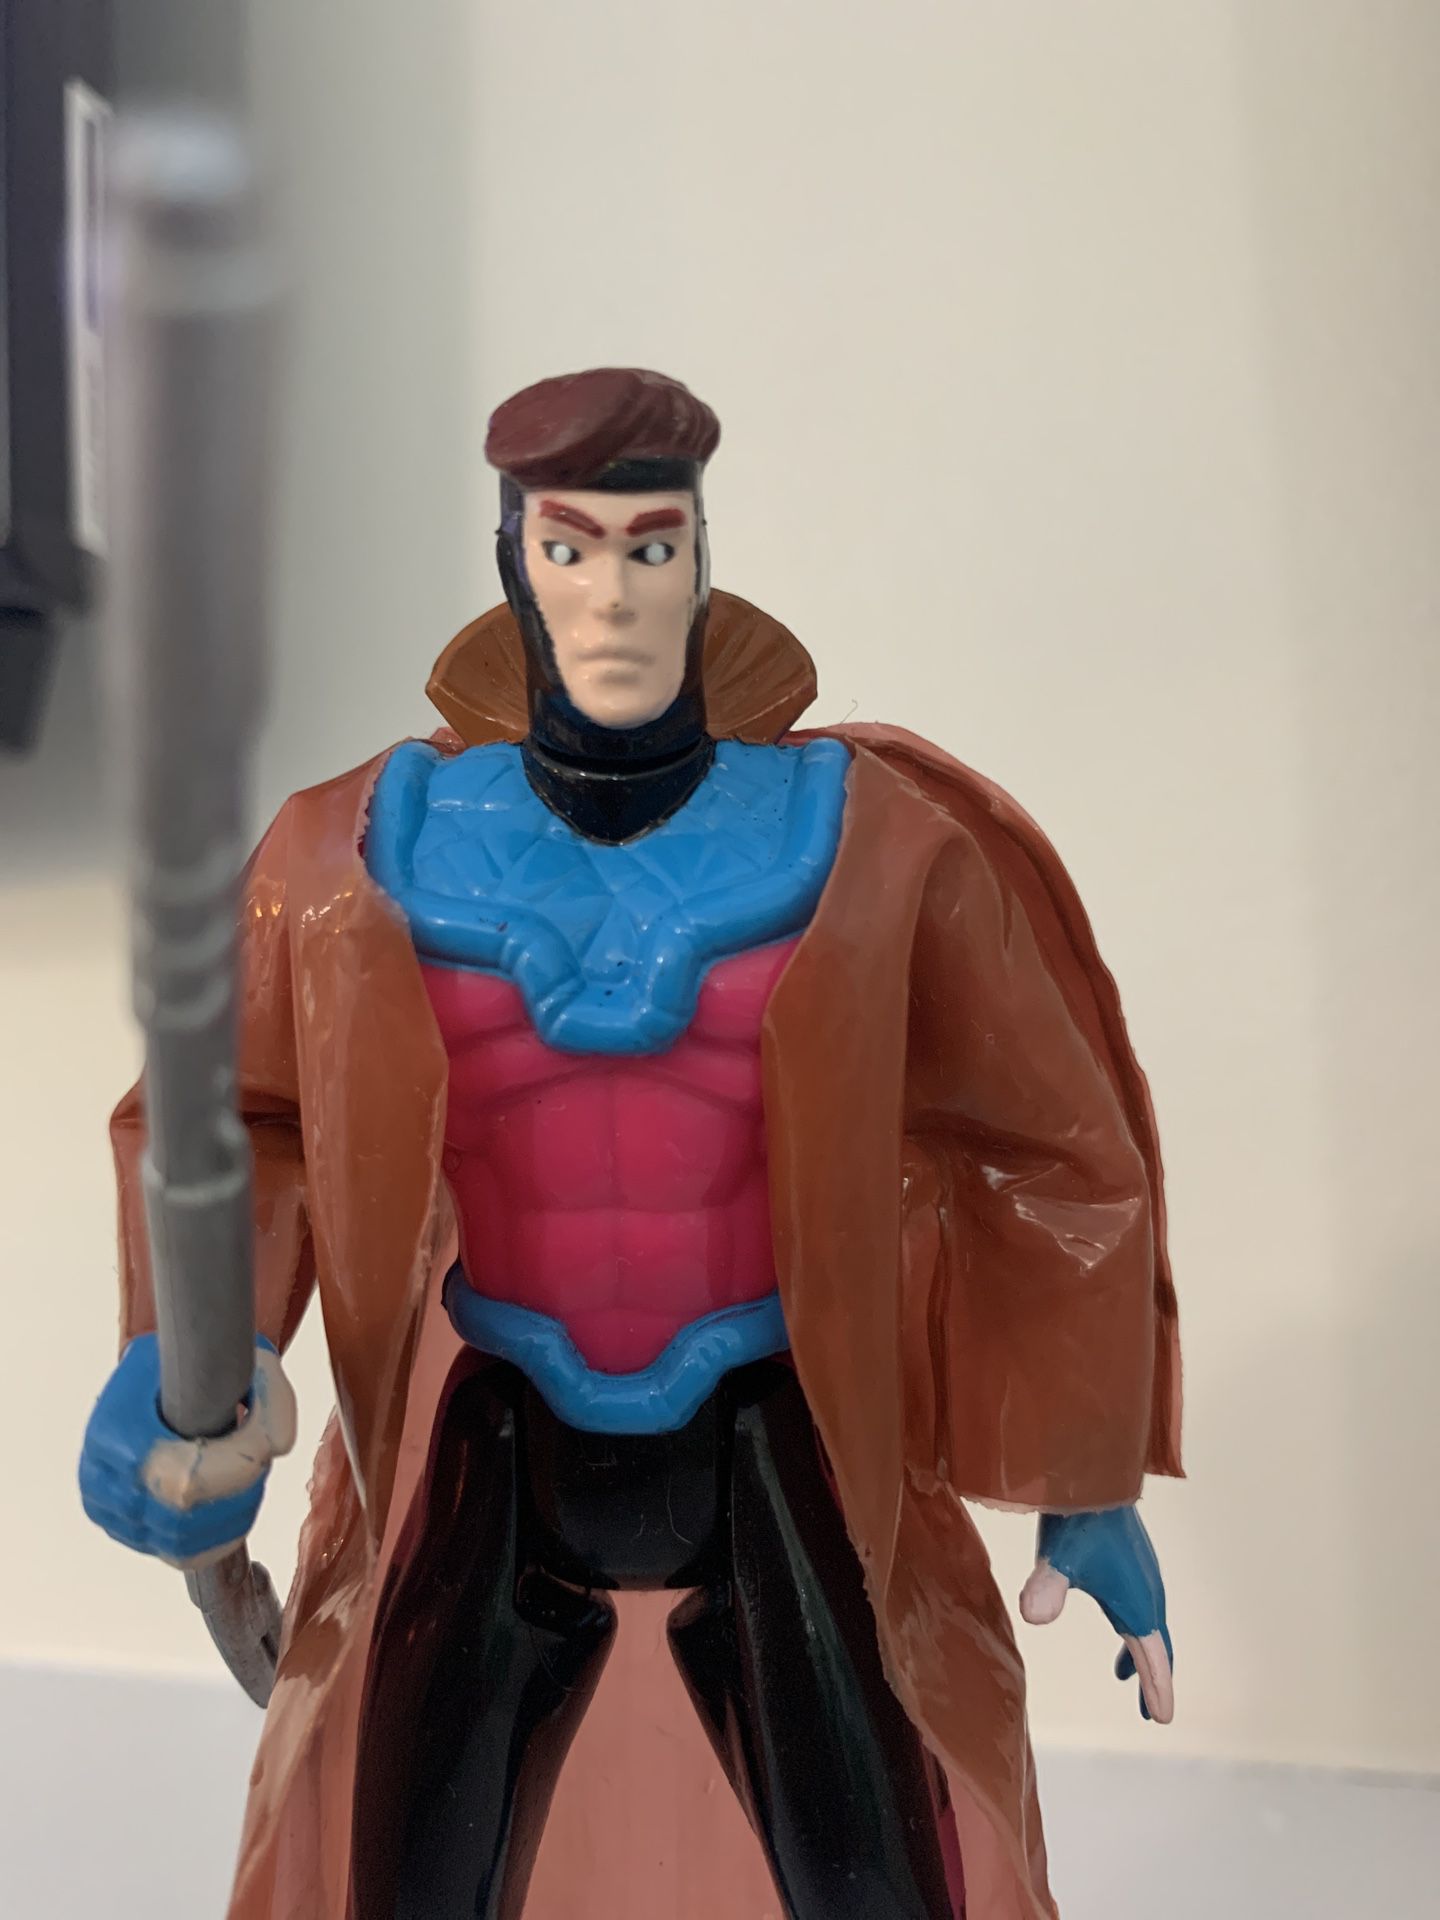 X-men Gambit 5 Inch Vintage Action Figure 1992 Toy Biz Loose Super Hero Marvel